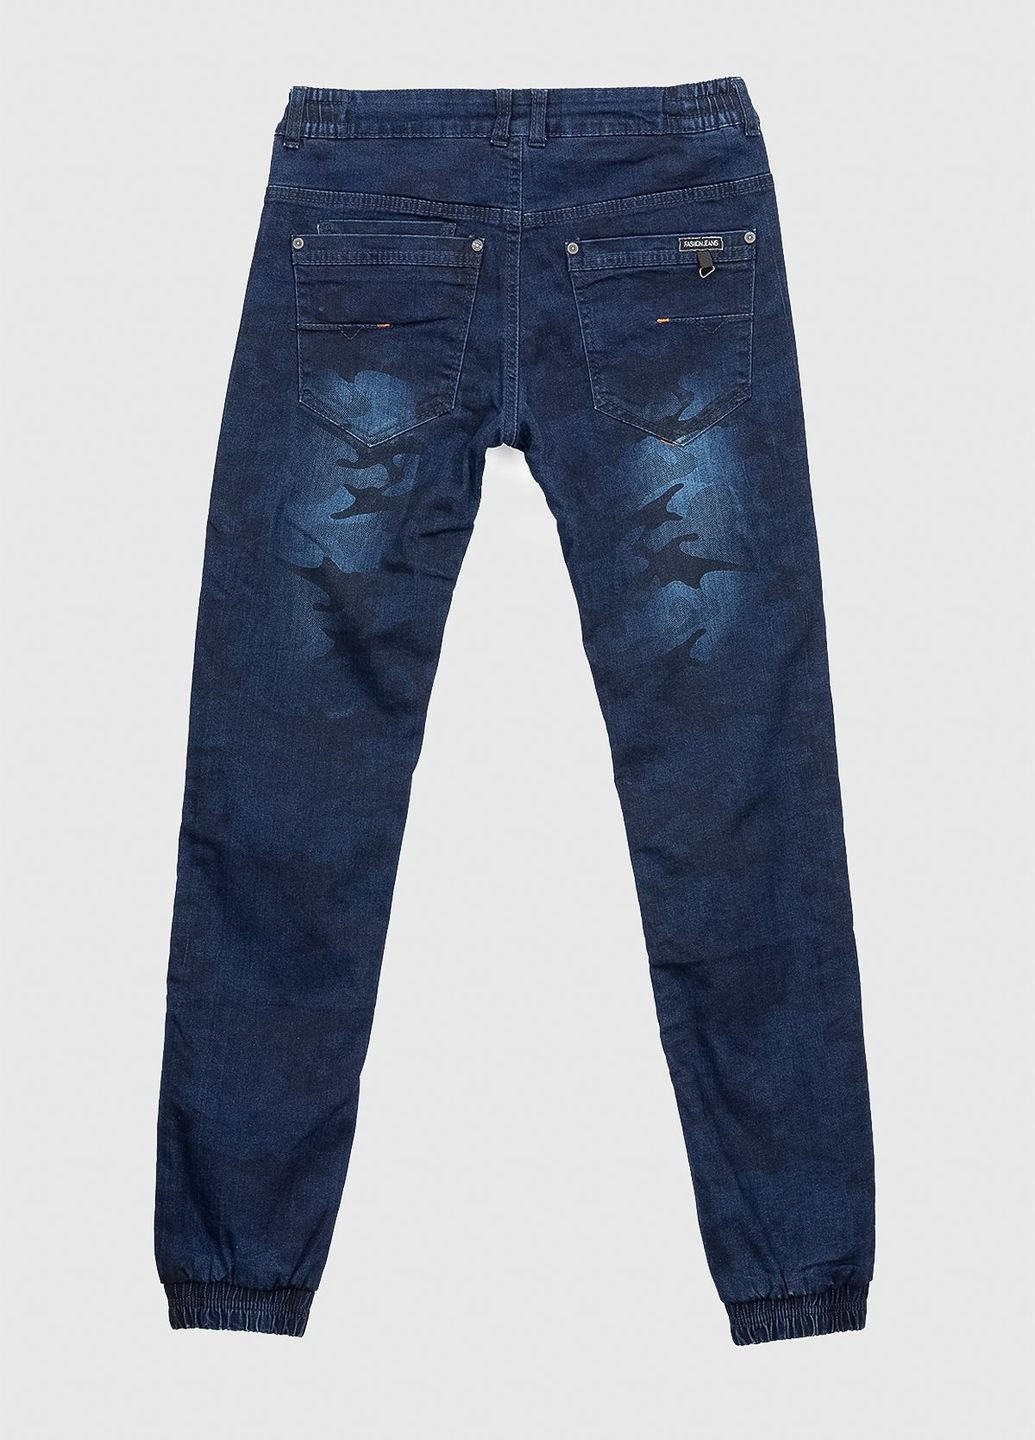 Темно-синие зимние джинсы No Brand